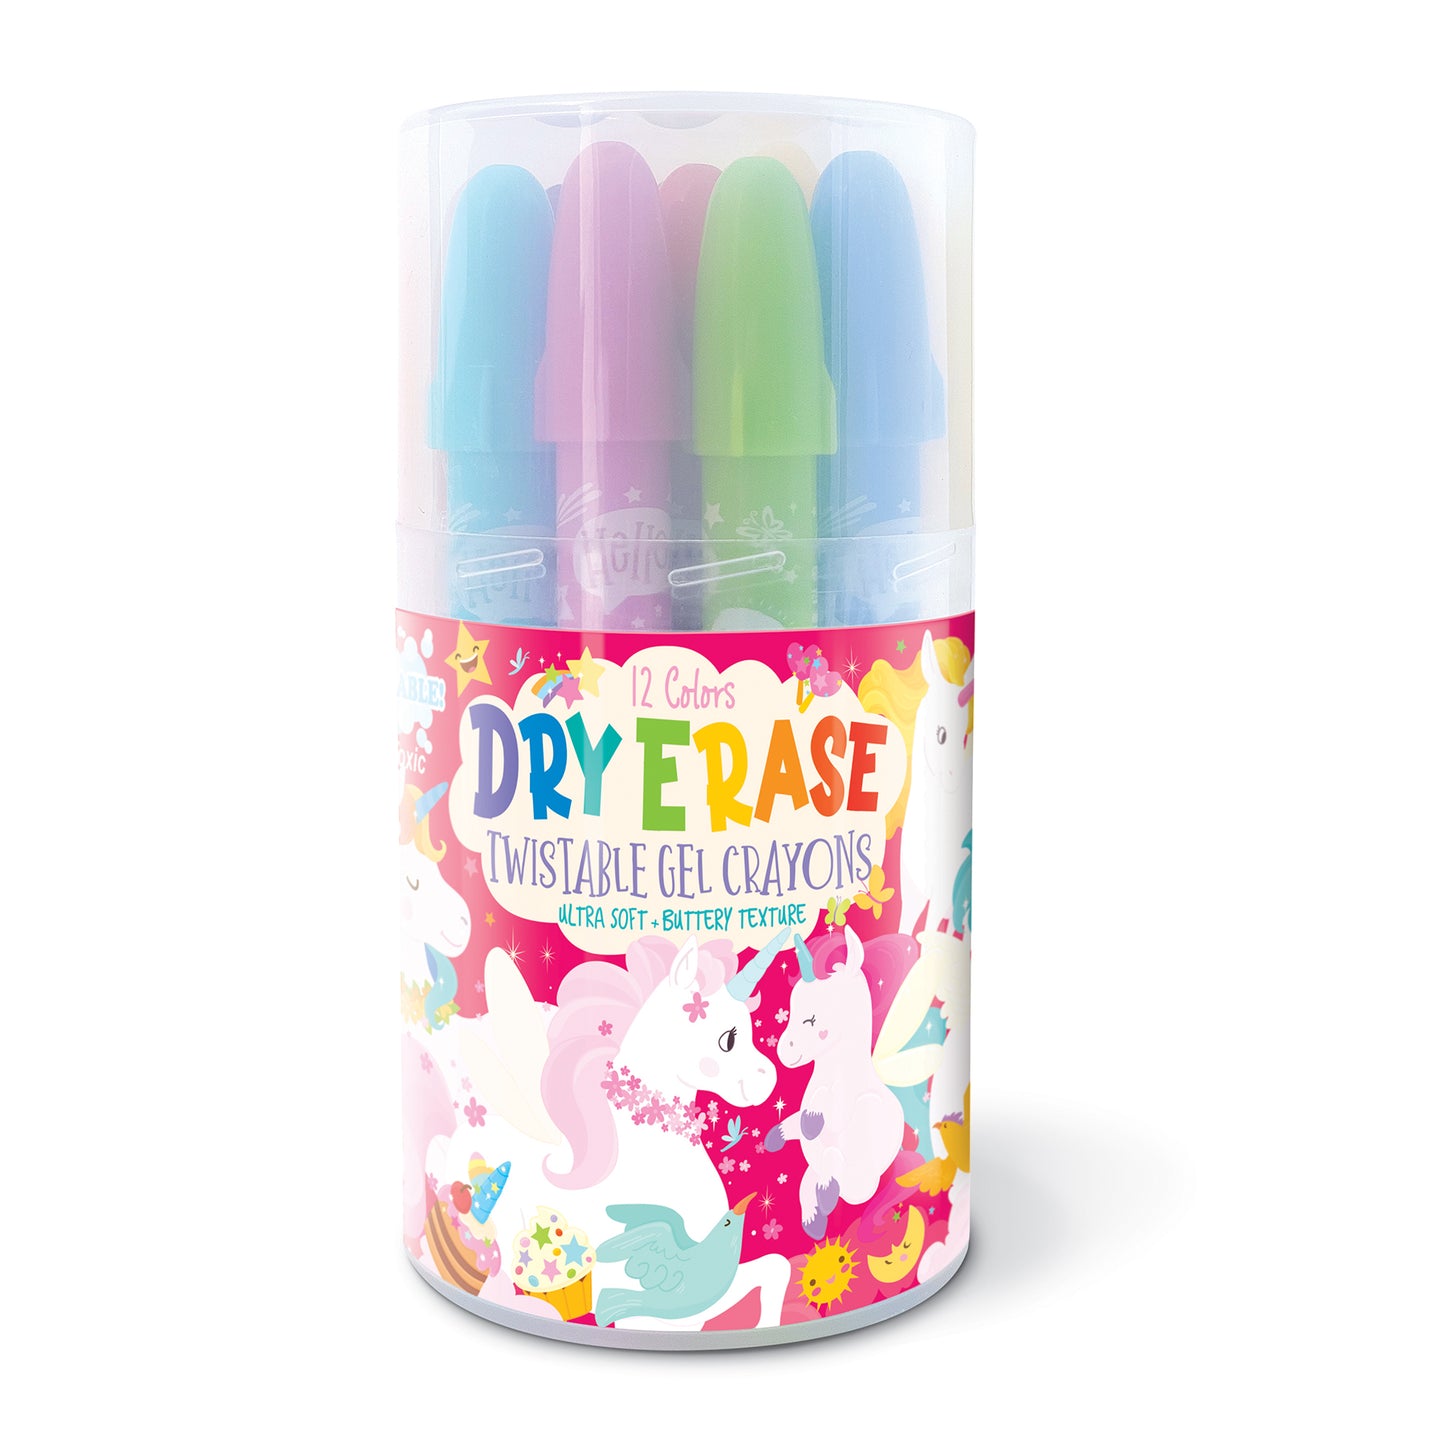 Dry Erase Twistable Gel Crayon-Unicorn Fantasy